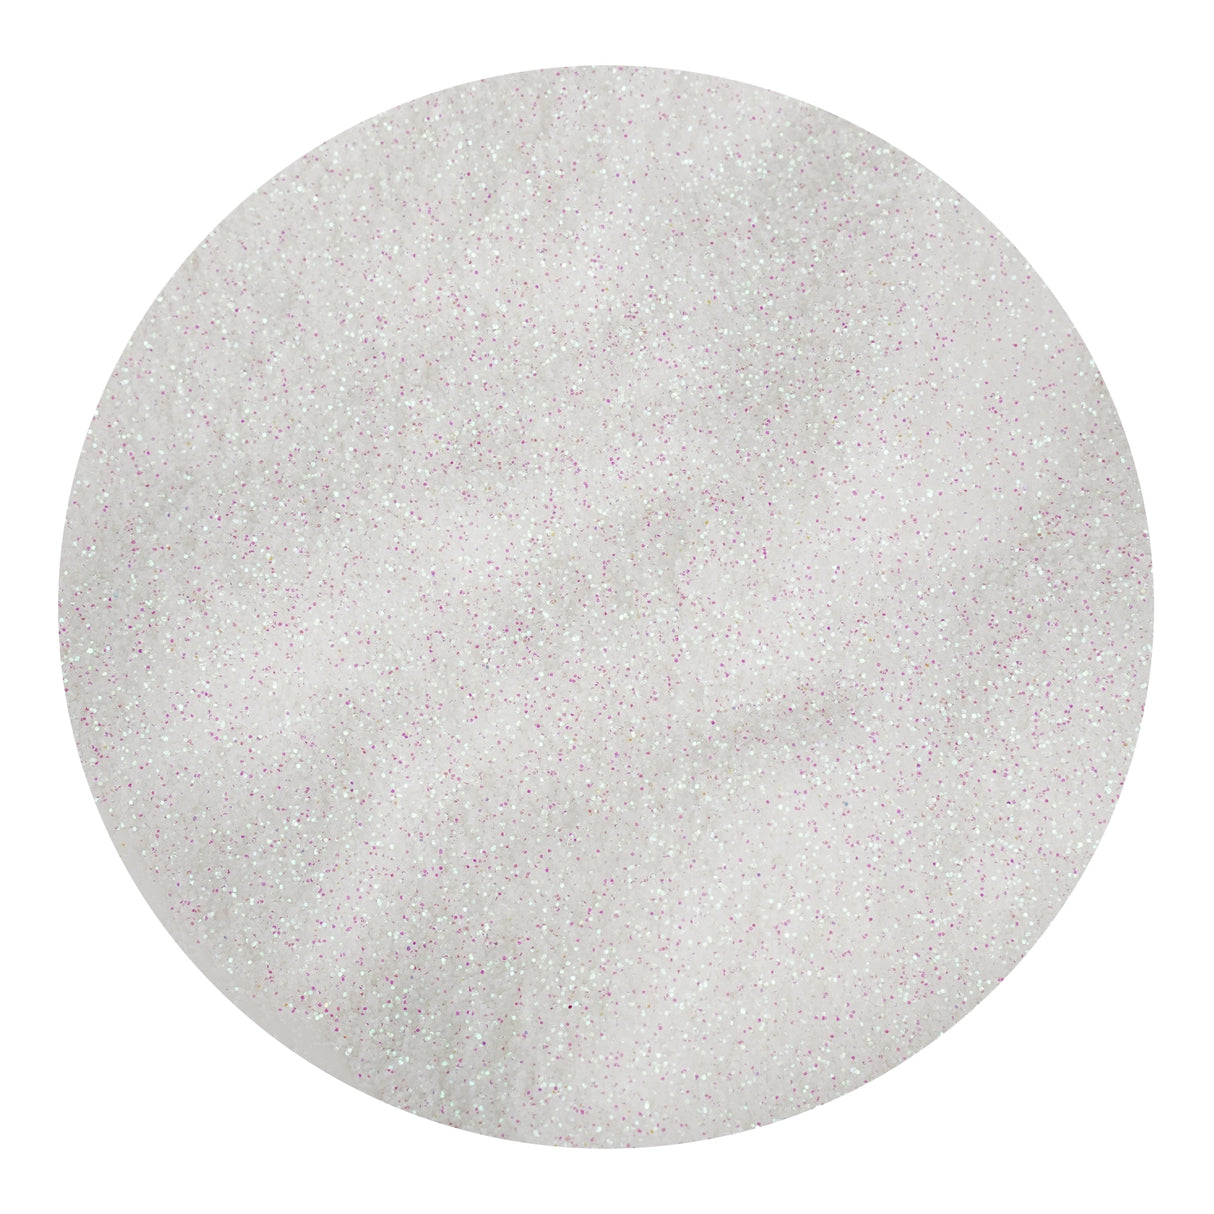 Ultra Fine Glitter - Blush White